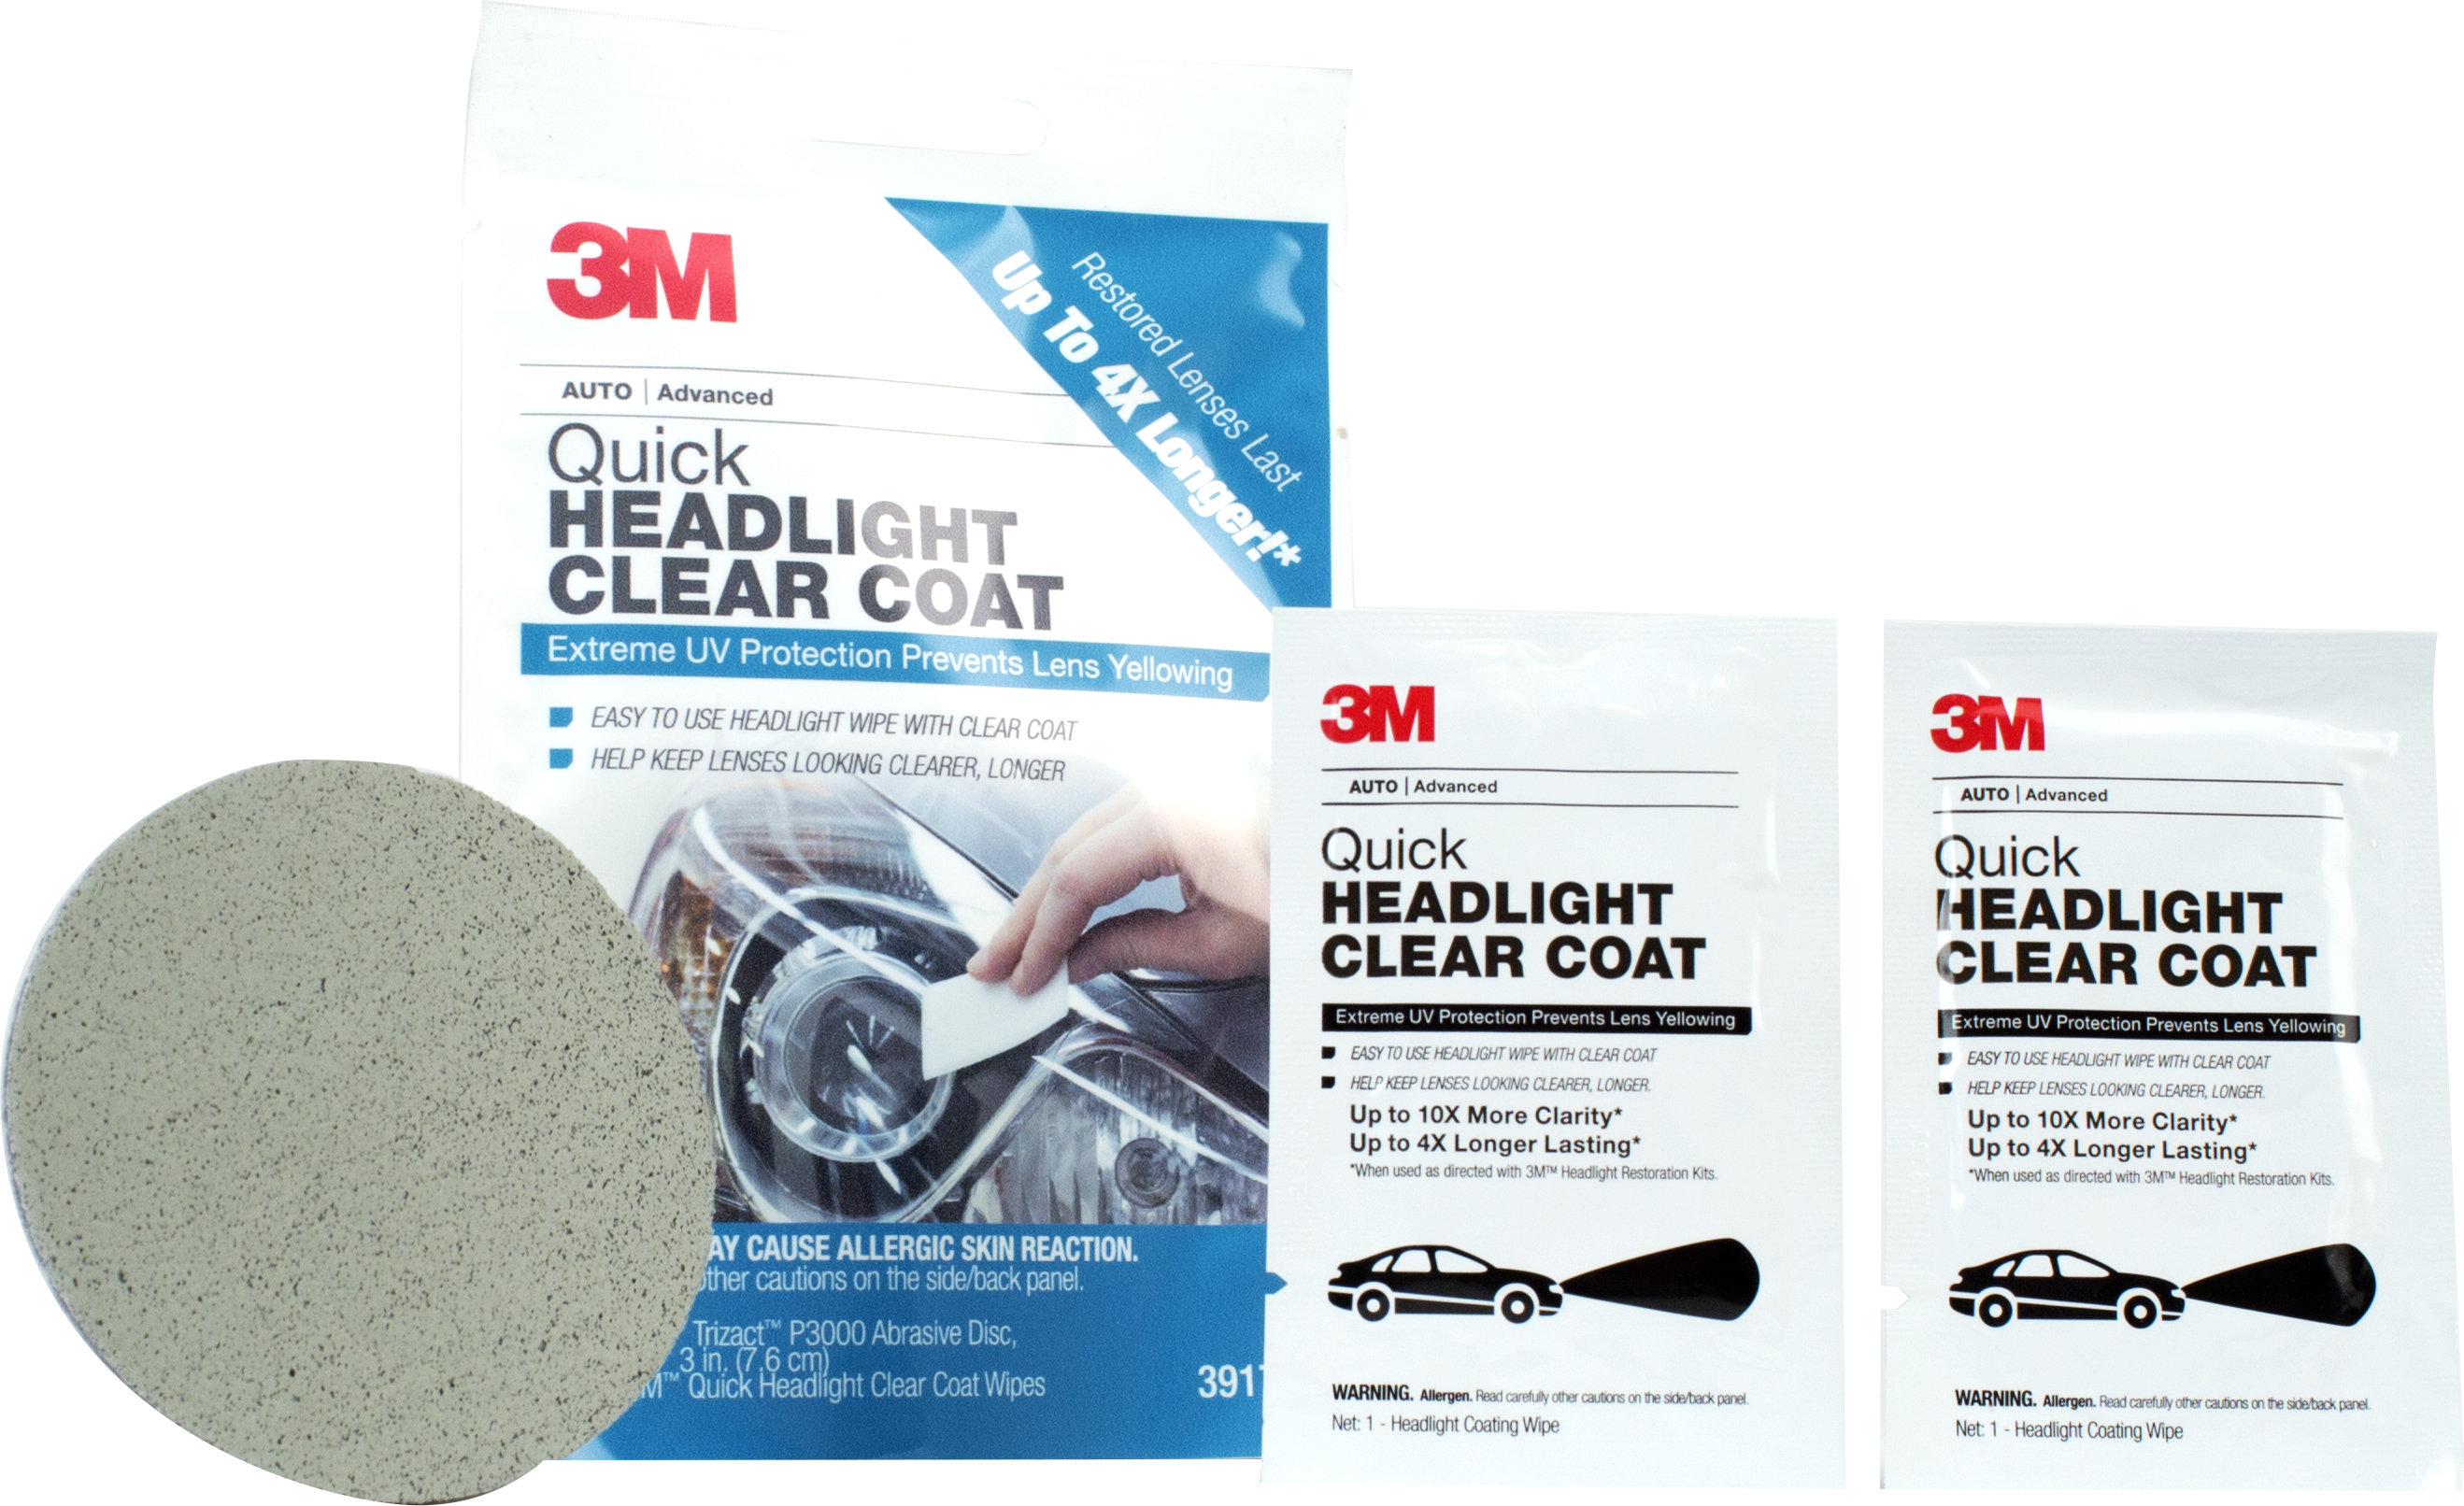 3M Debuts Headlight Clear Coat - Tires & Parts News